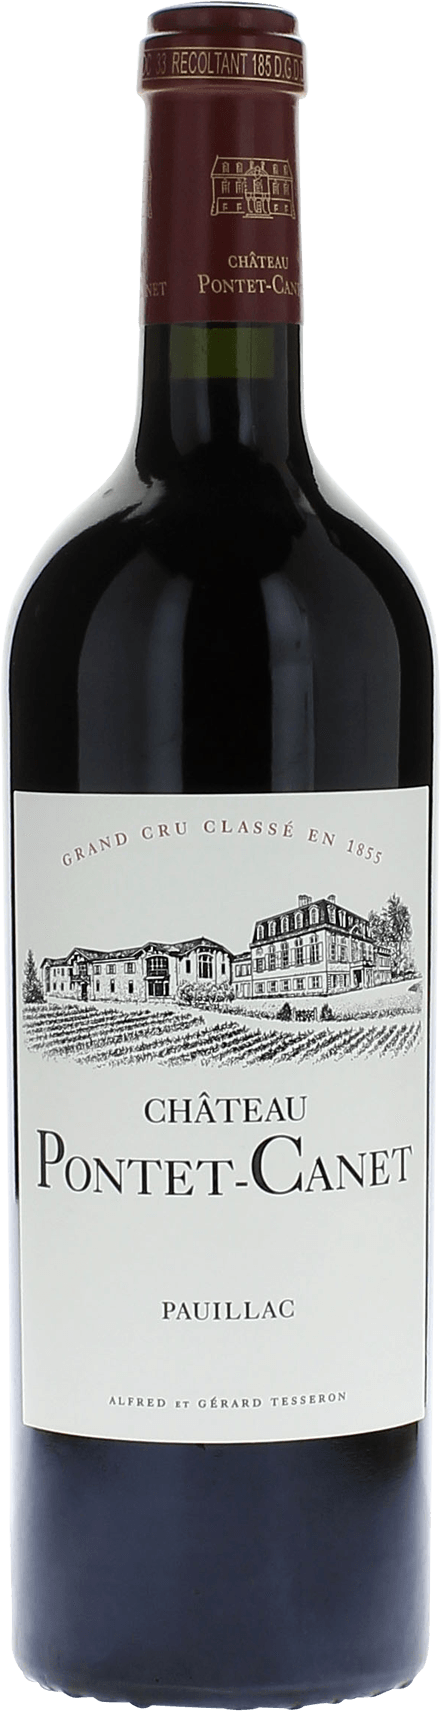 Pontet canet 2016 5me Grand cru class Pauillac, Bordeaux rouge